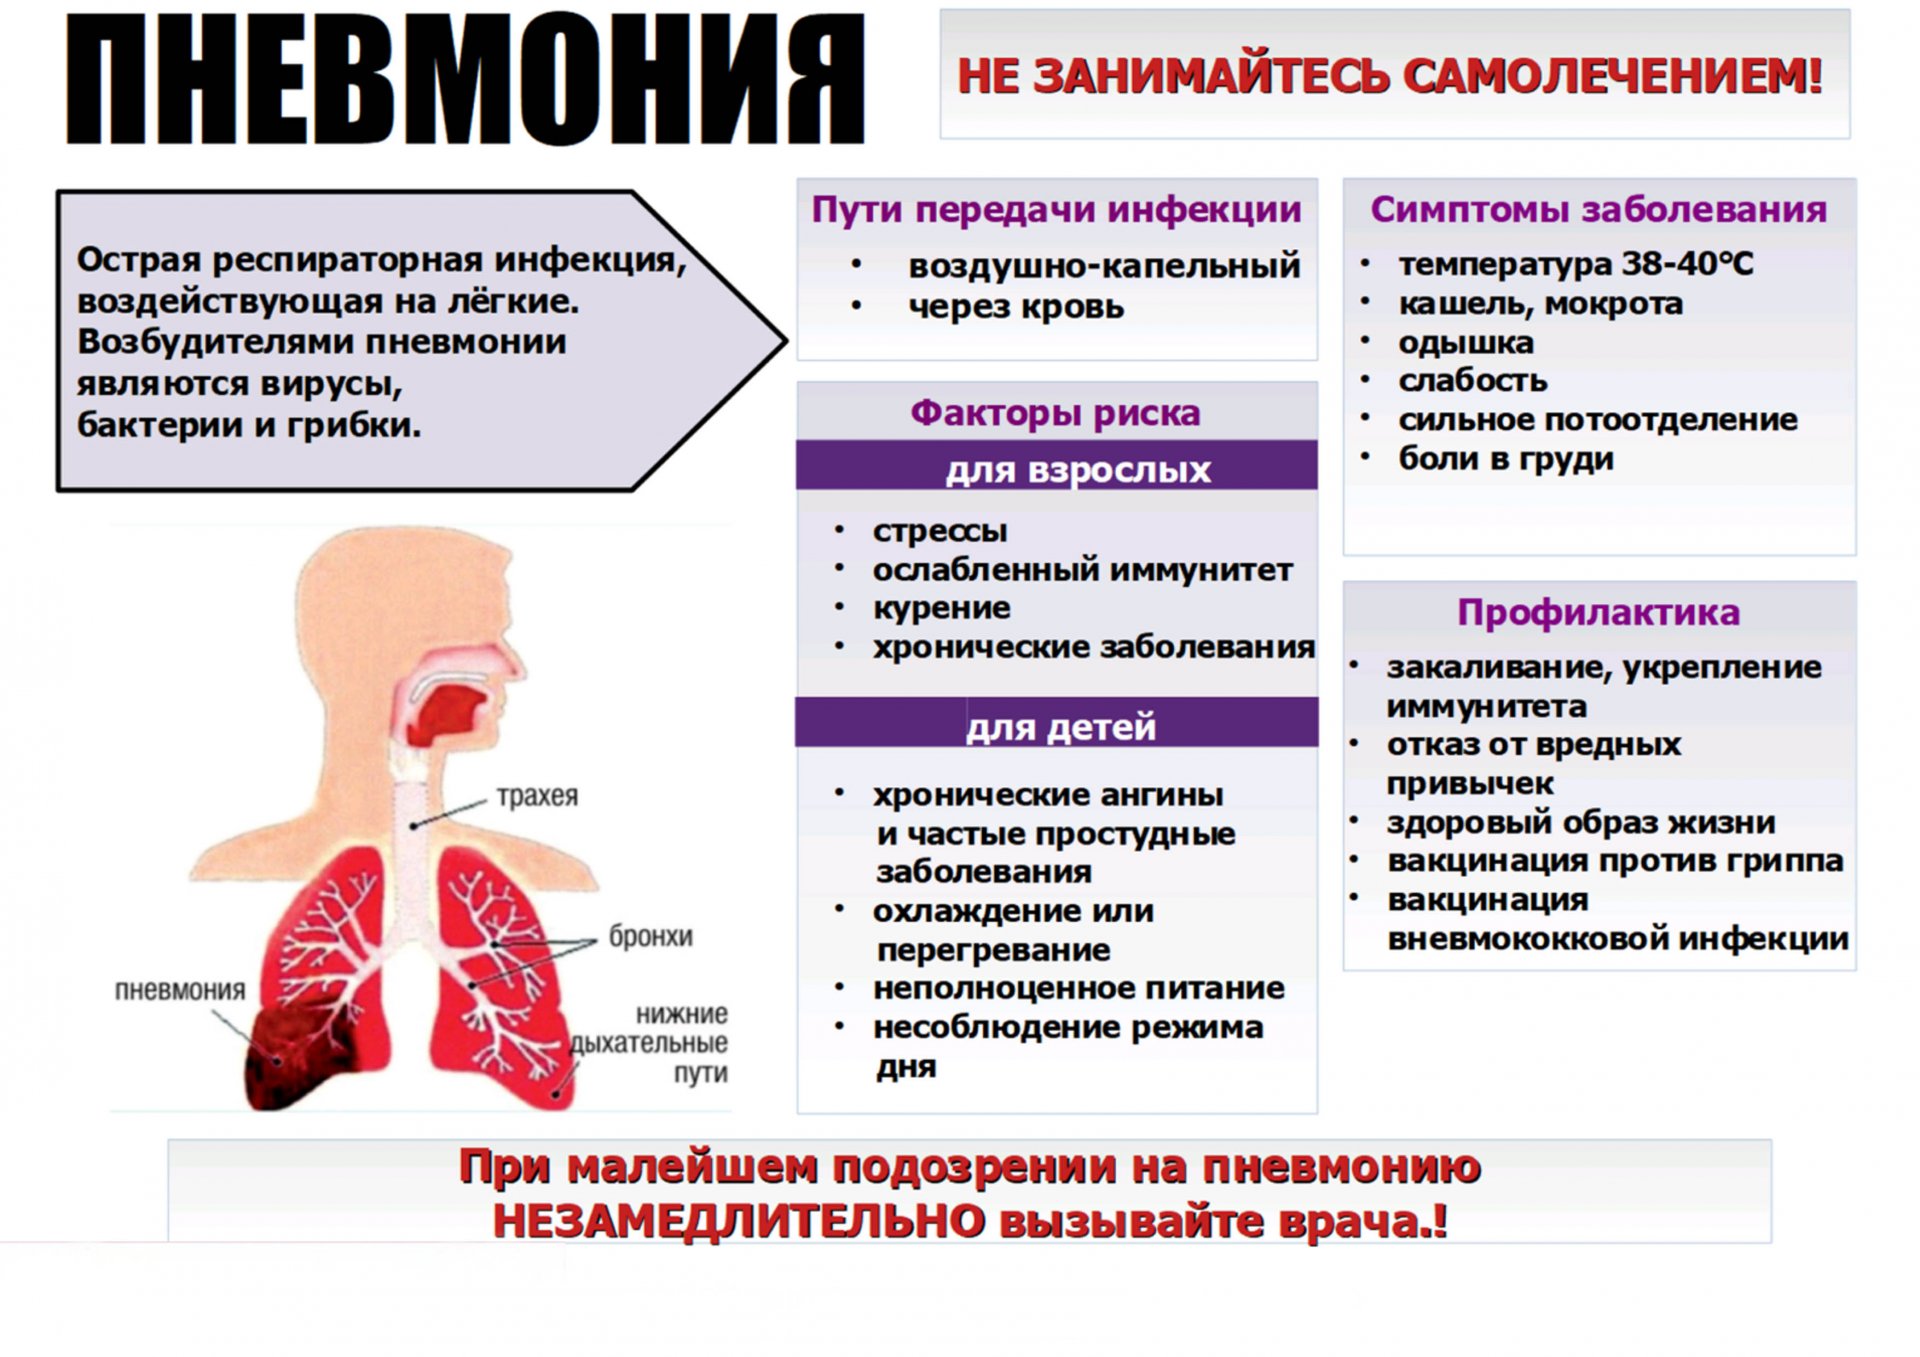 Заболевание грипп б. Пневмония симптомы у взрослых. Восполении лёгких, симптомы. Симптомы при пневмонии у взрослых.